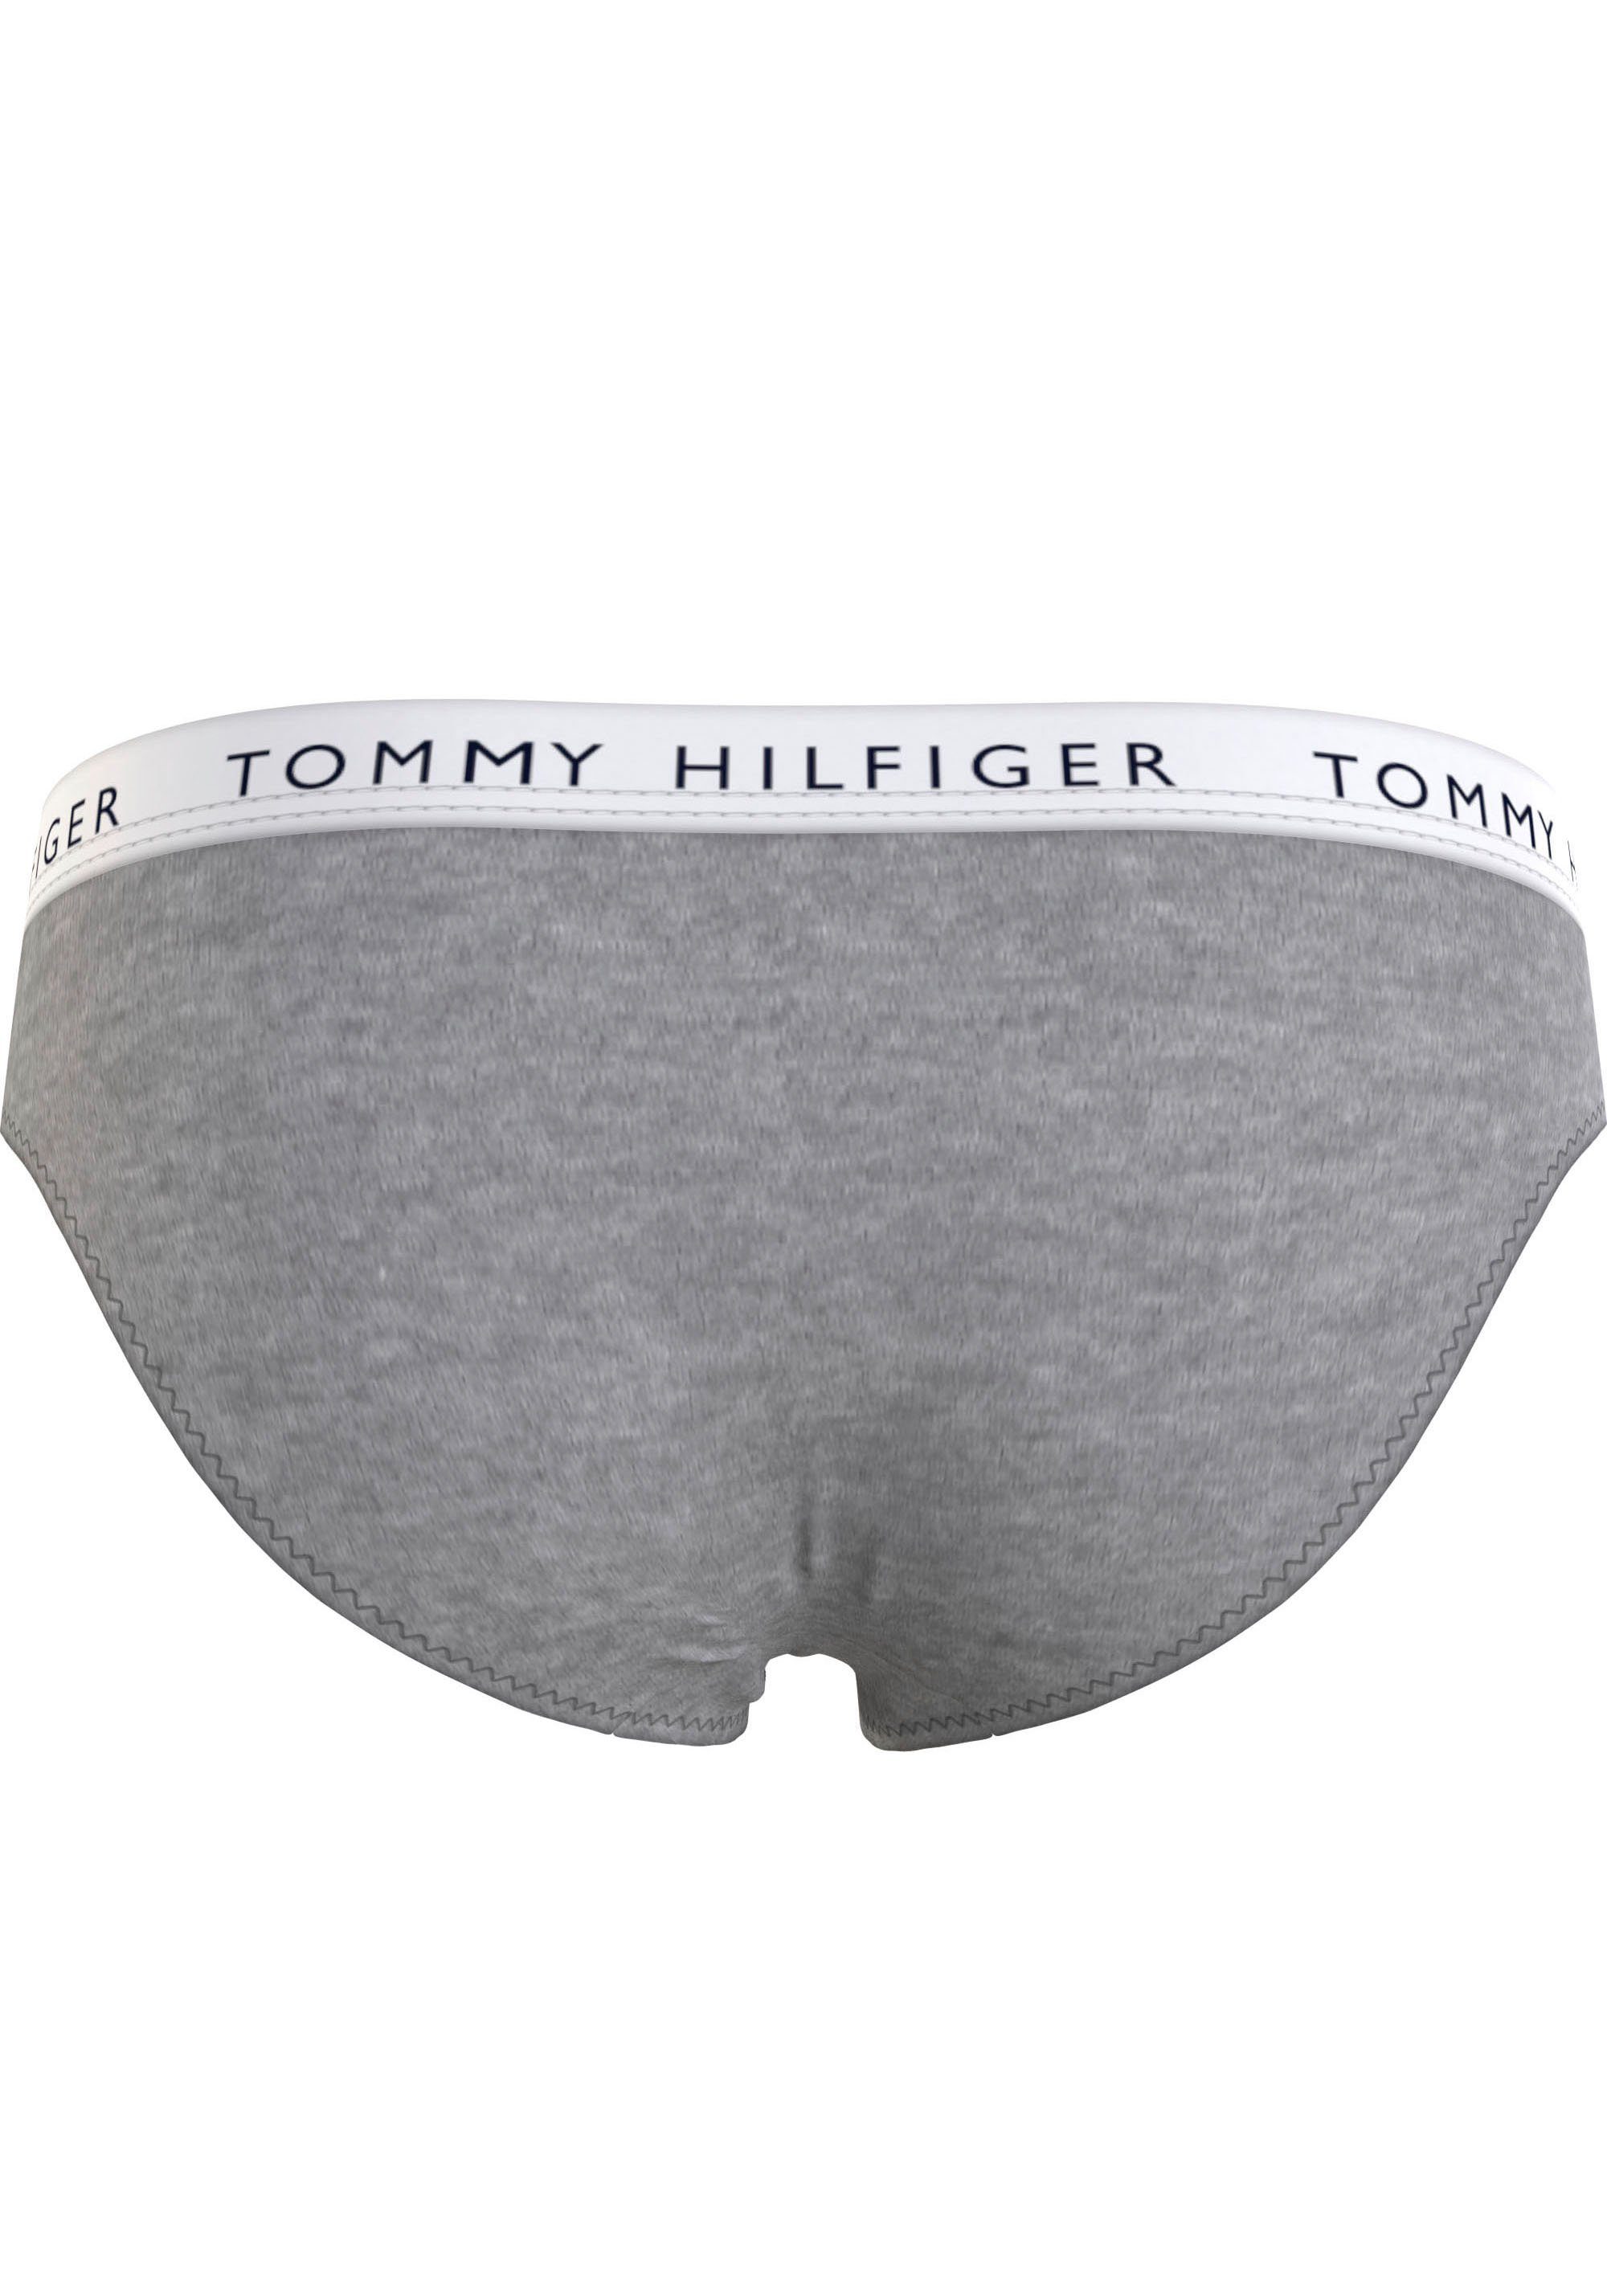 Hilfiger Tommy Tommy Bikinislip mit Logobund 7er-Pack) (Packung, Underwear 7-St., Hilfiger